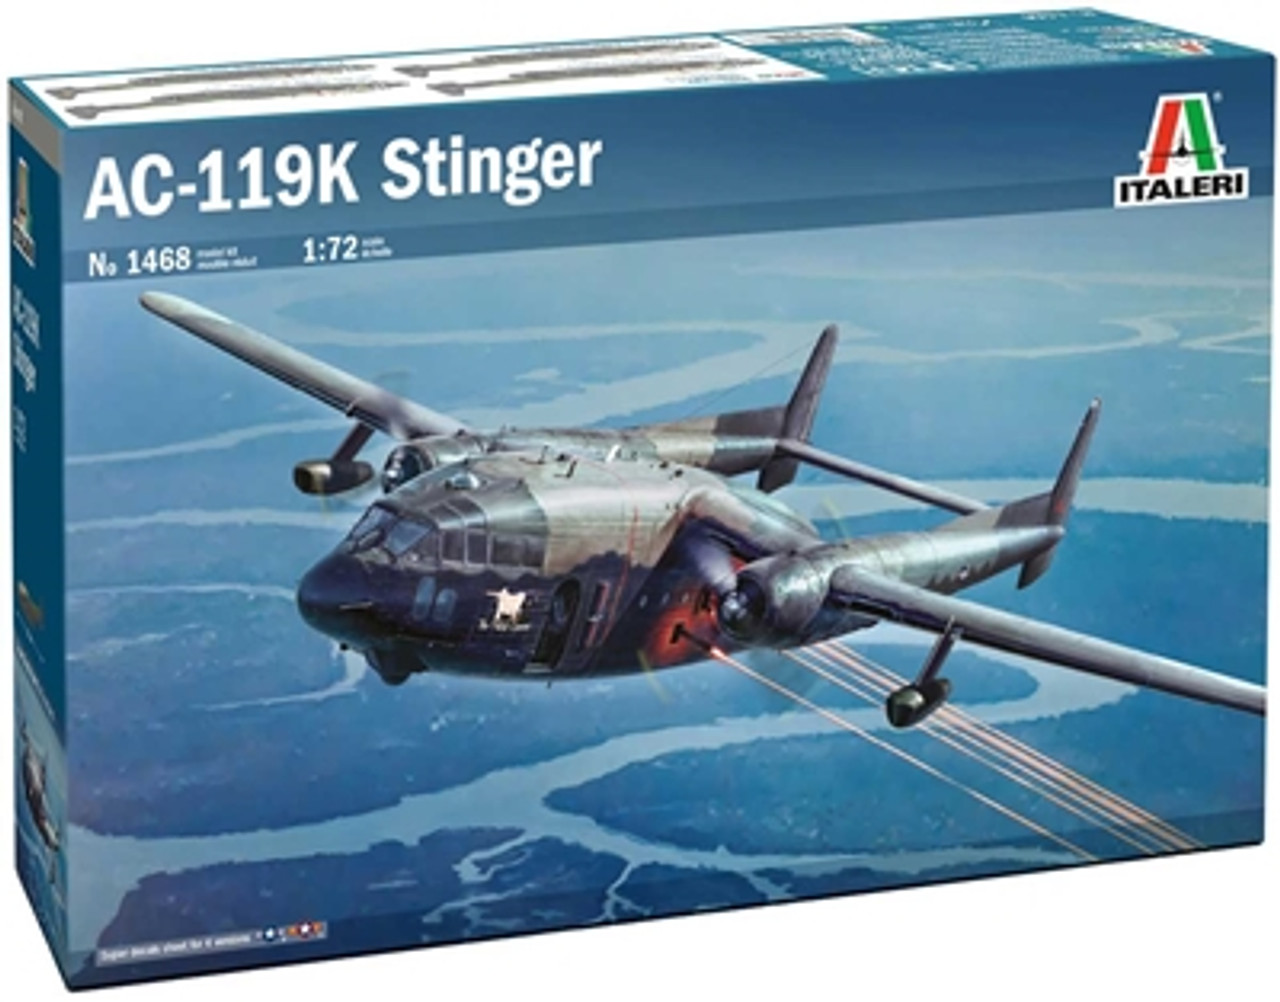 Italeri 1468 1/72 C-119K Stinger Plastic Model Kit